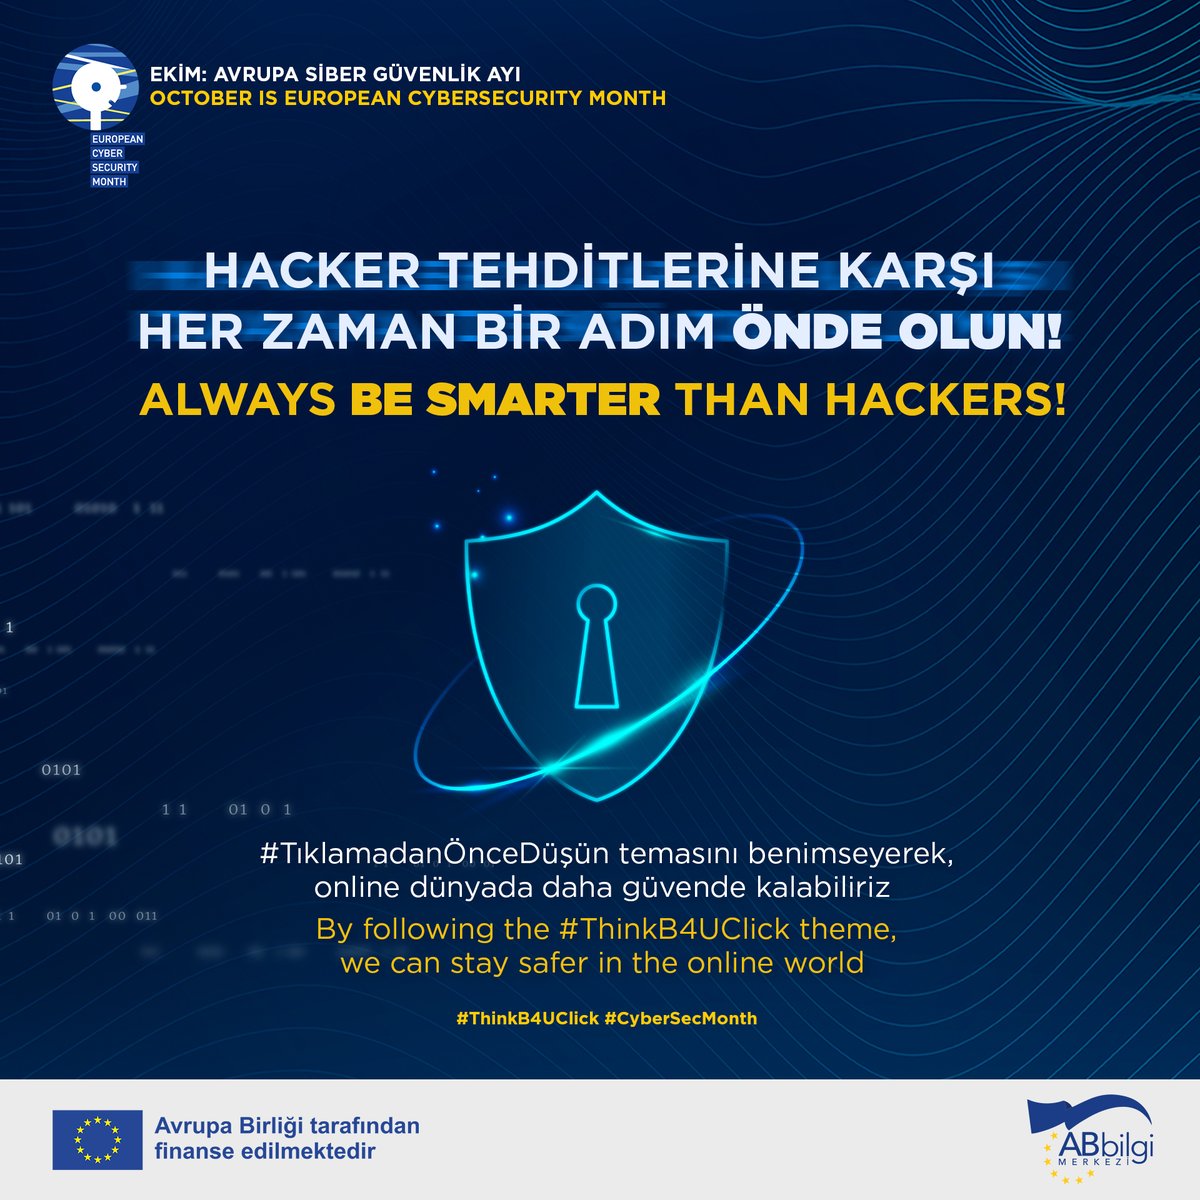 🇪🇺 Avrupa Birliği Siber Güvenlik Ajansı (ENISA), Komisyon ve üye devletler her yıl Ekim ayında #CyberSecMonth kampanyası düzenliyor.
Daha fazla bilgi için: cybersecuritymonth.eu

#ThinkB4UClick #CyberSecMonth